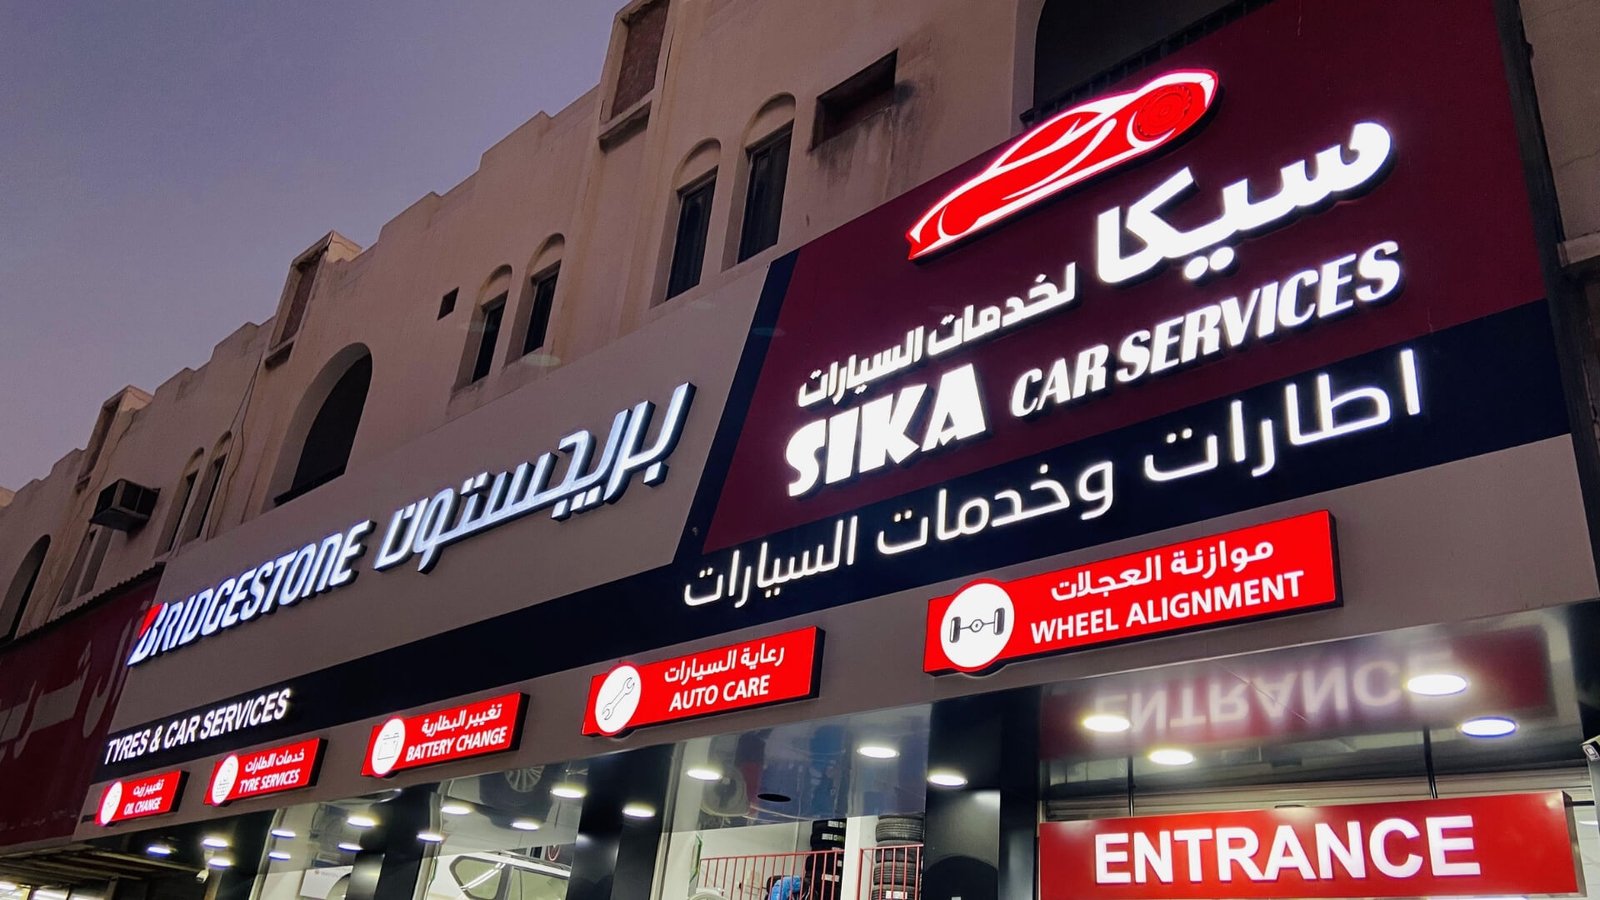 sika-car-services-qatar (3)